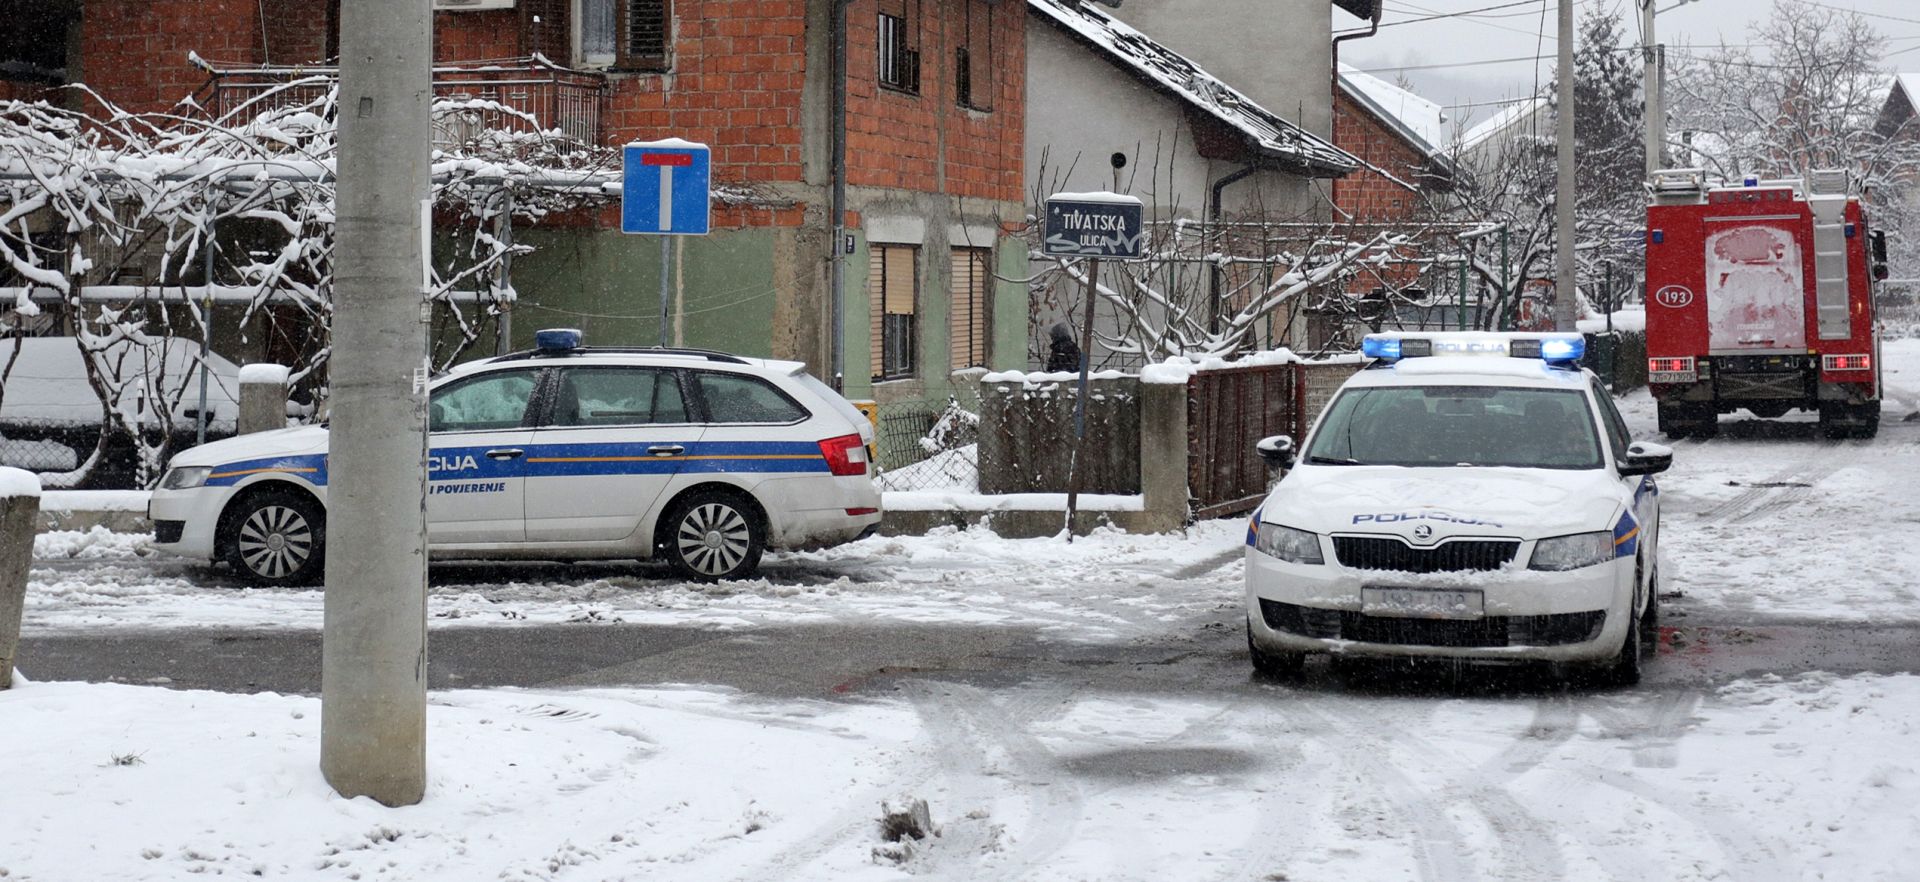 TRAGEDIJA U ZAGREBU: Nakon požara u potkrovlju kuće pronađena dva tijela